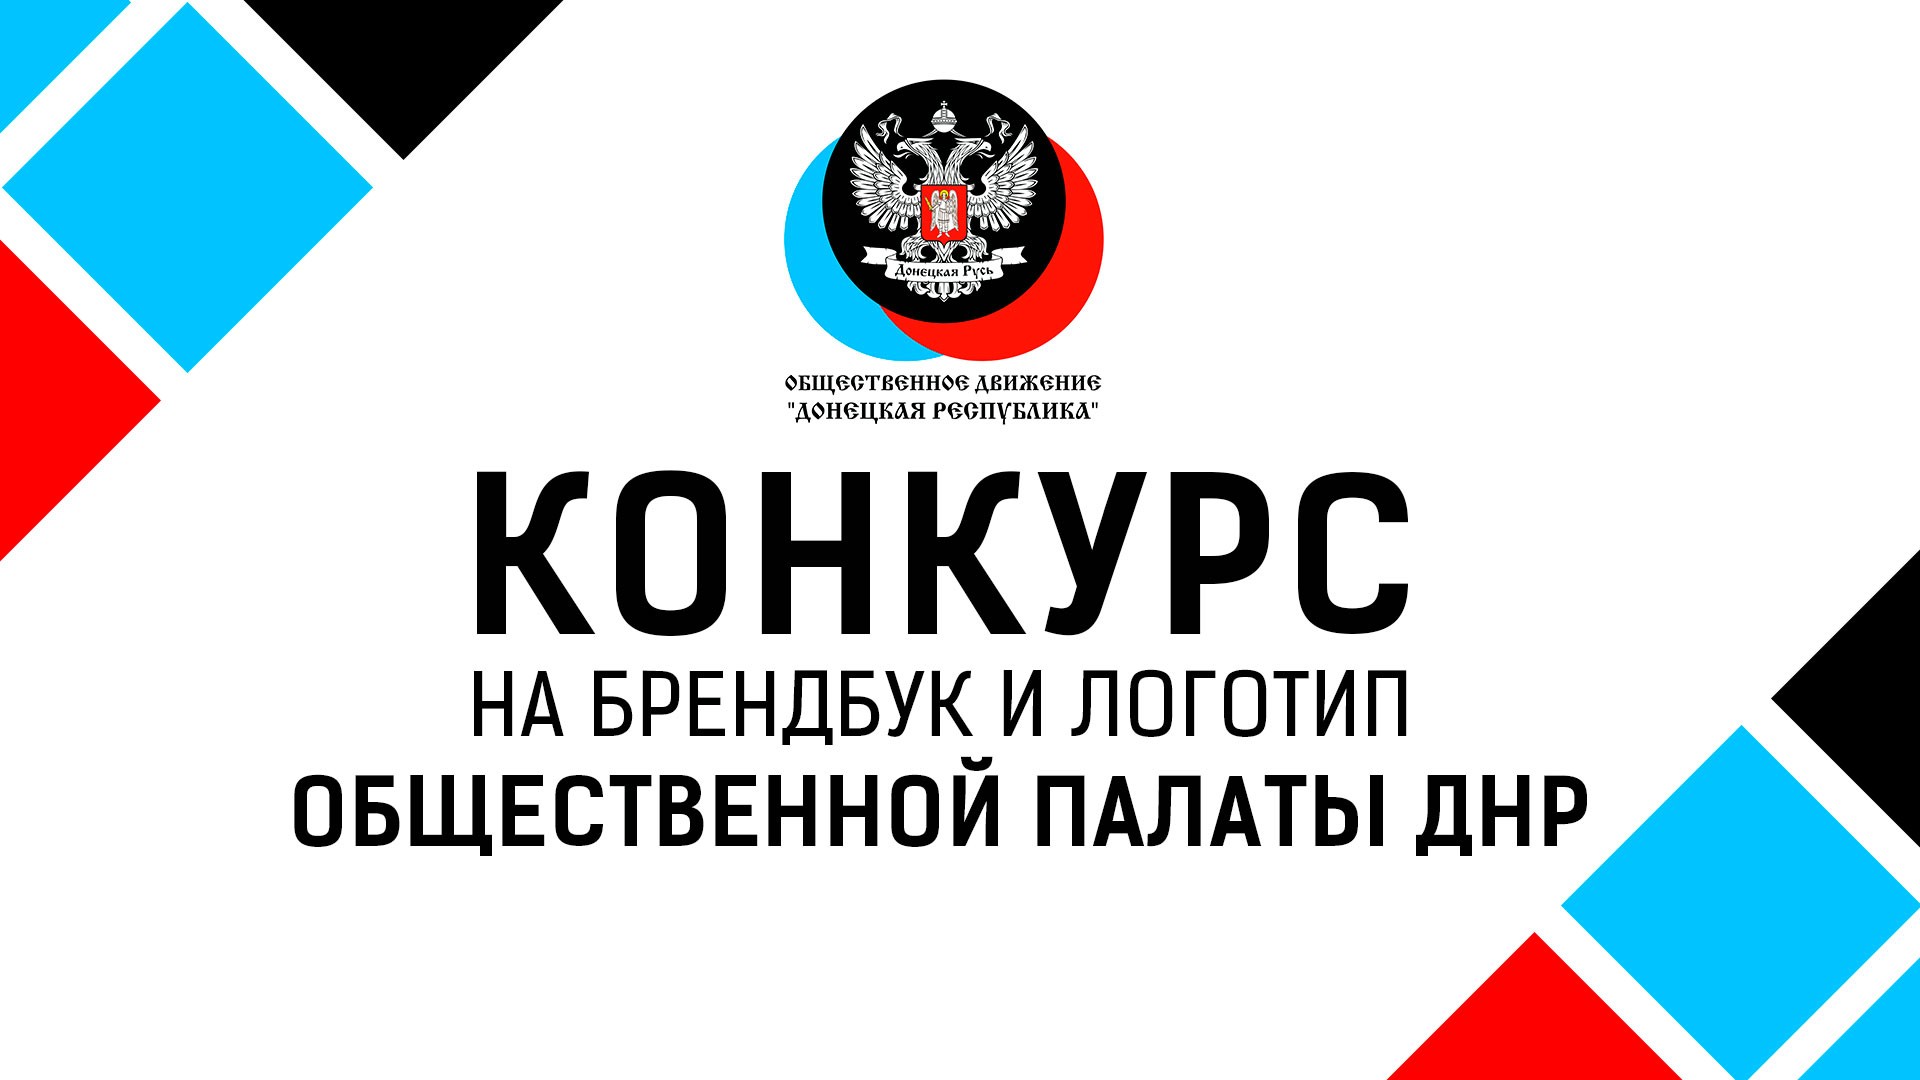 Подведены промежуточные итоги конкурса на создание логотипа и брендбука Общественной палаты ДНР